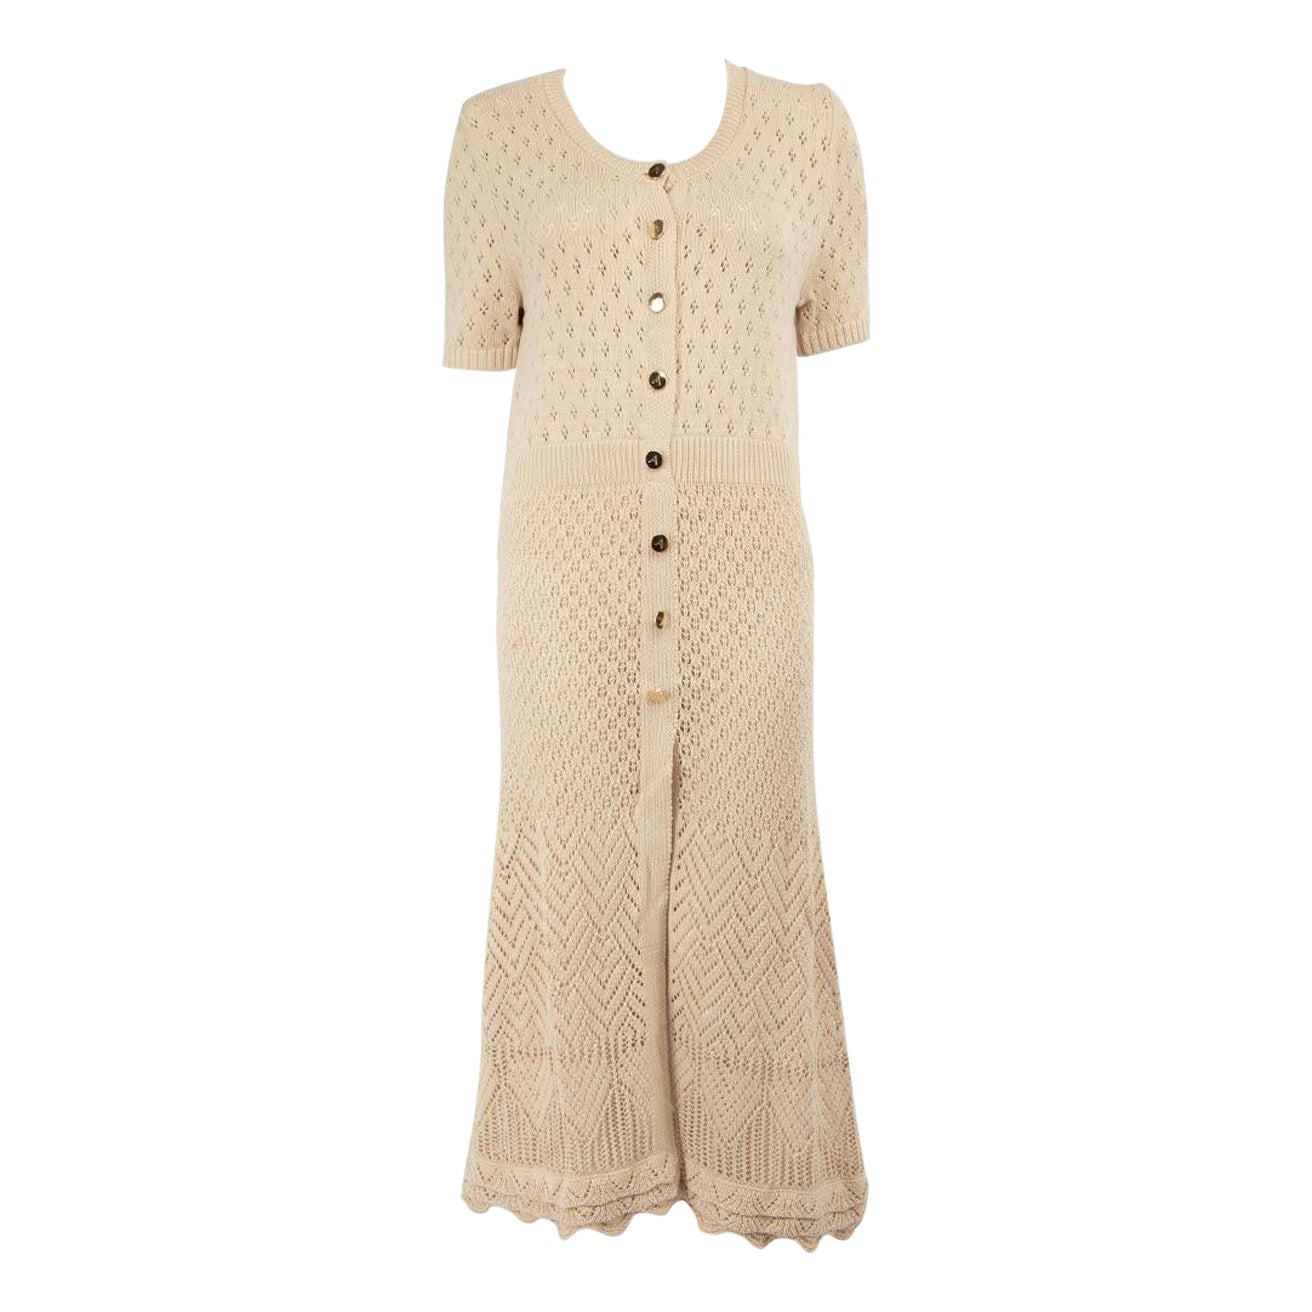 Altuzarra Beige Button Detail Knit Dress Size L For Sale